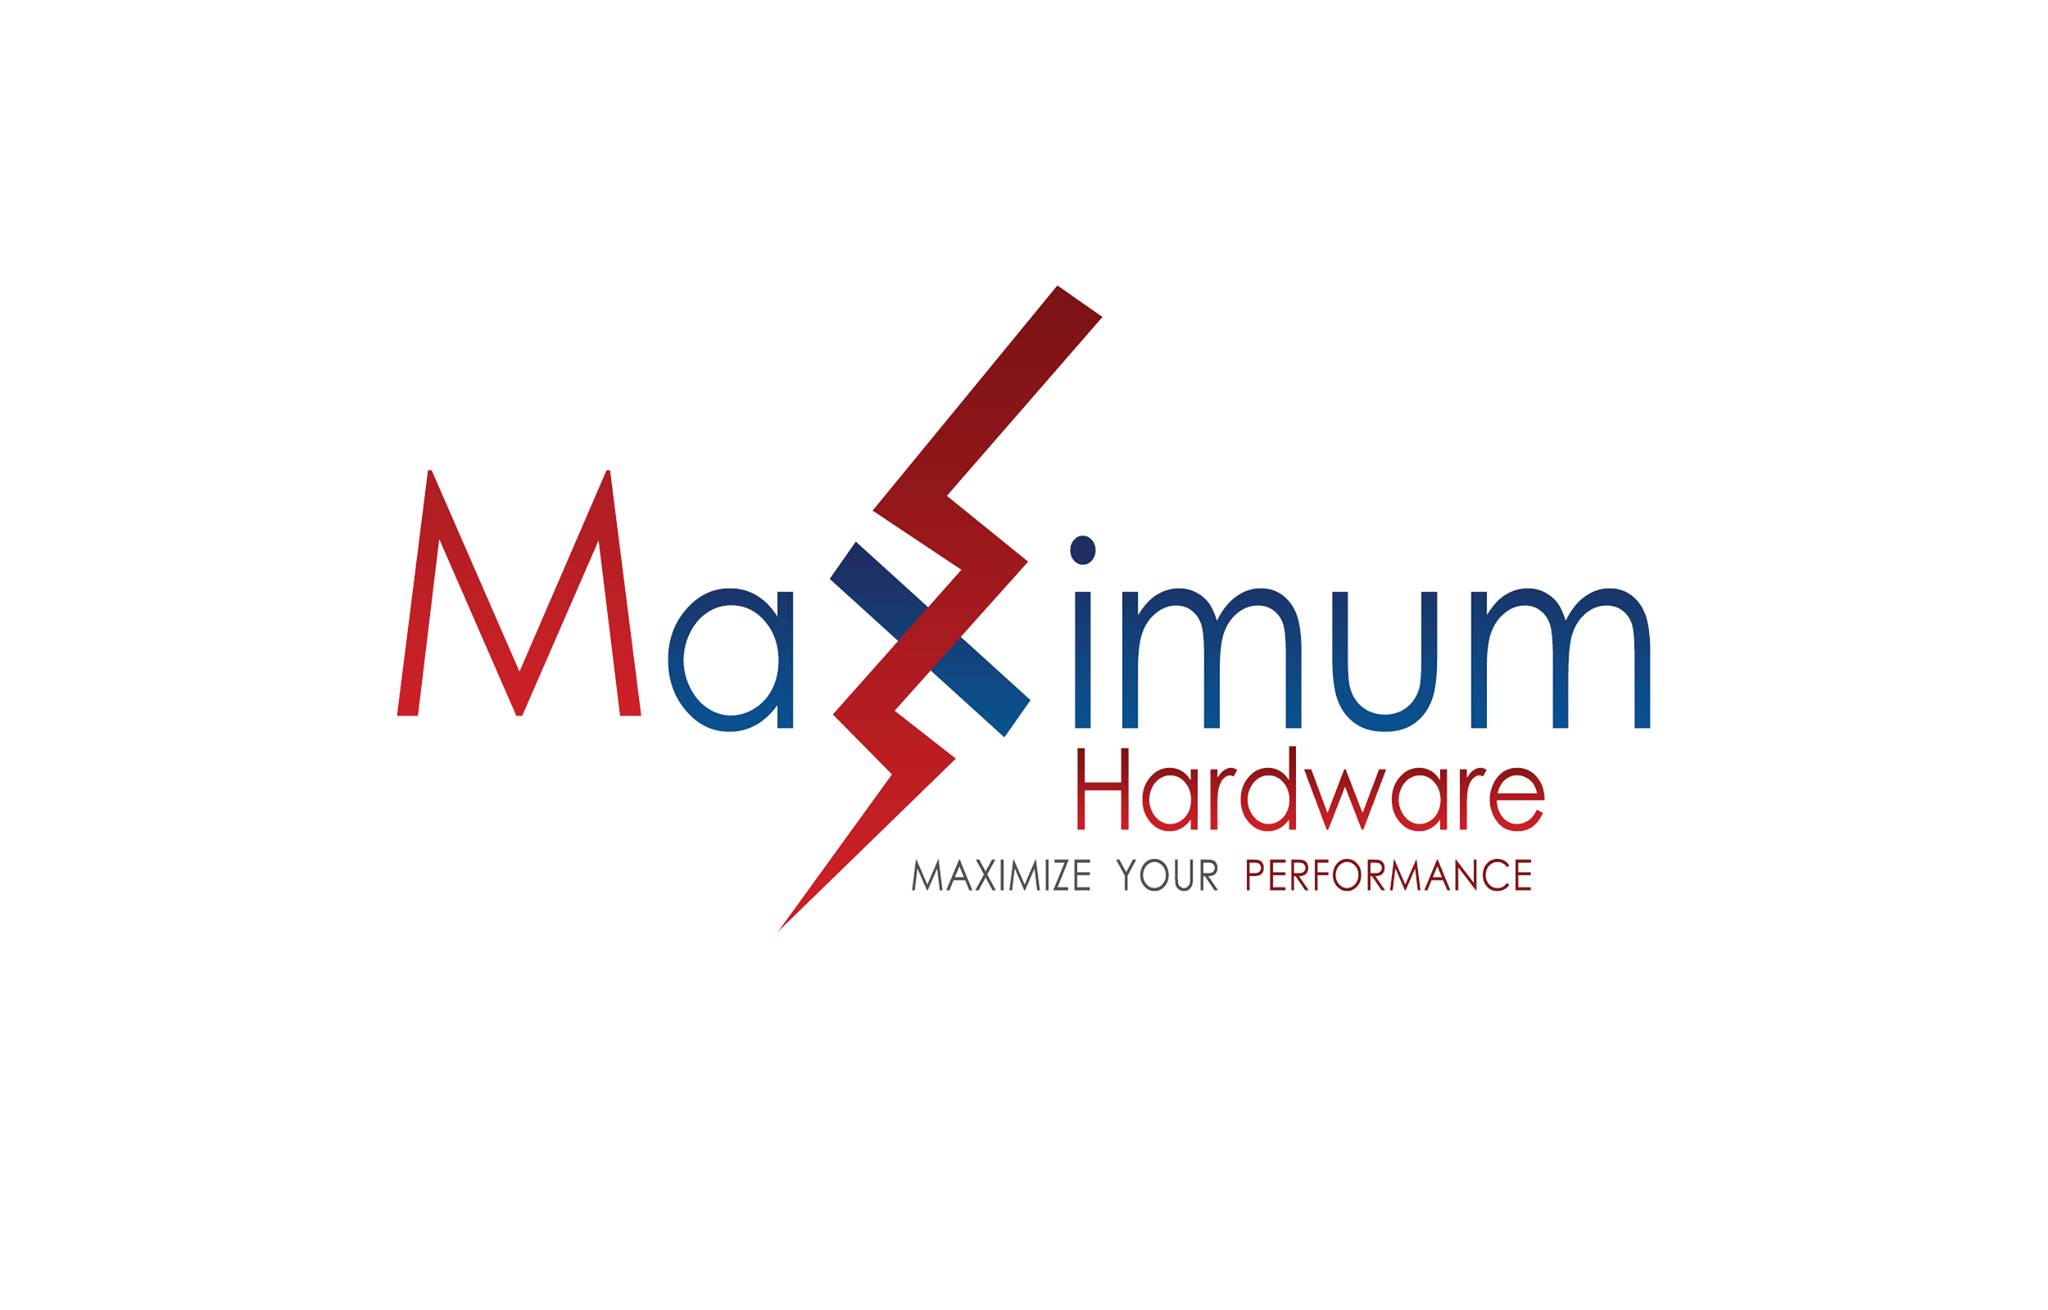 ماكسيمام هاردوير Maximum Hardware